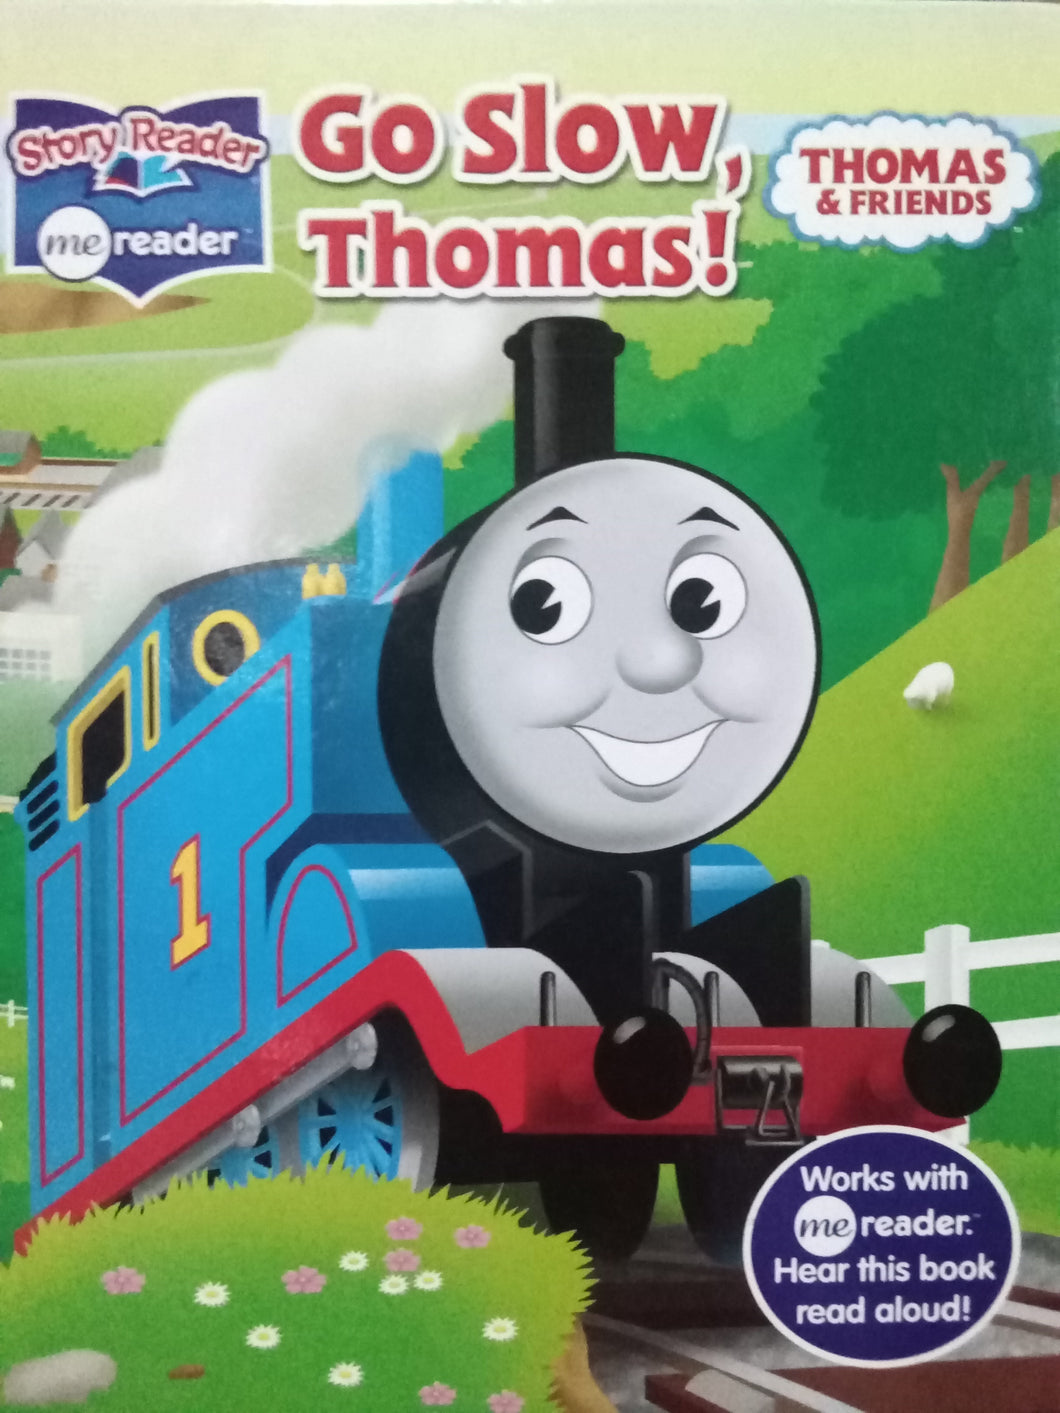 Thomas & Friends Go Slow , Thomas!